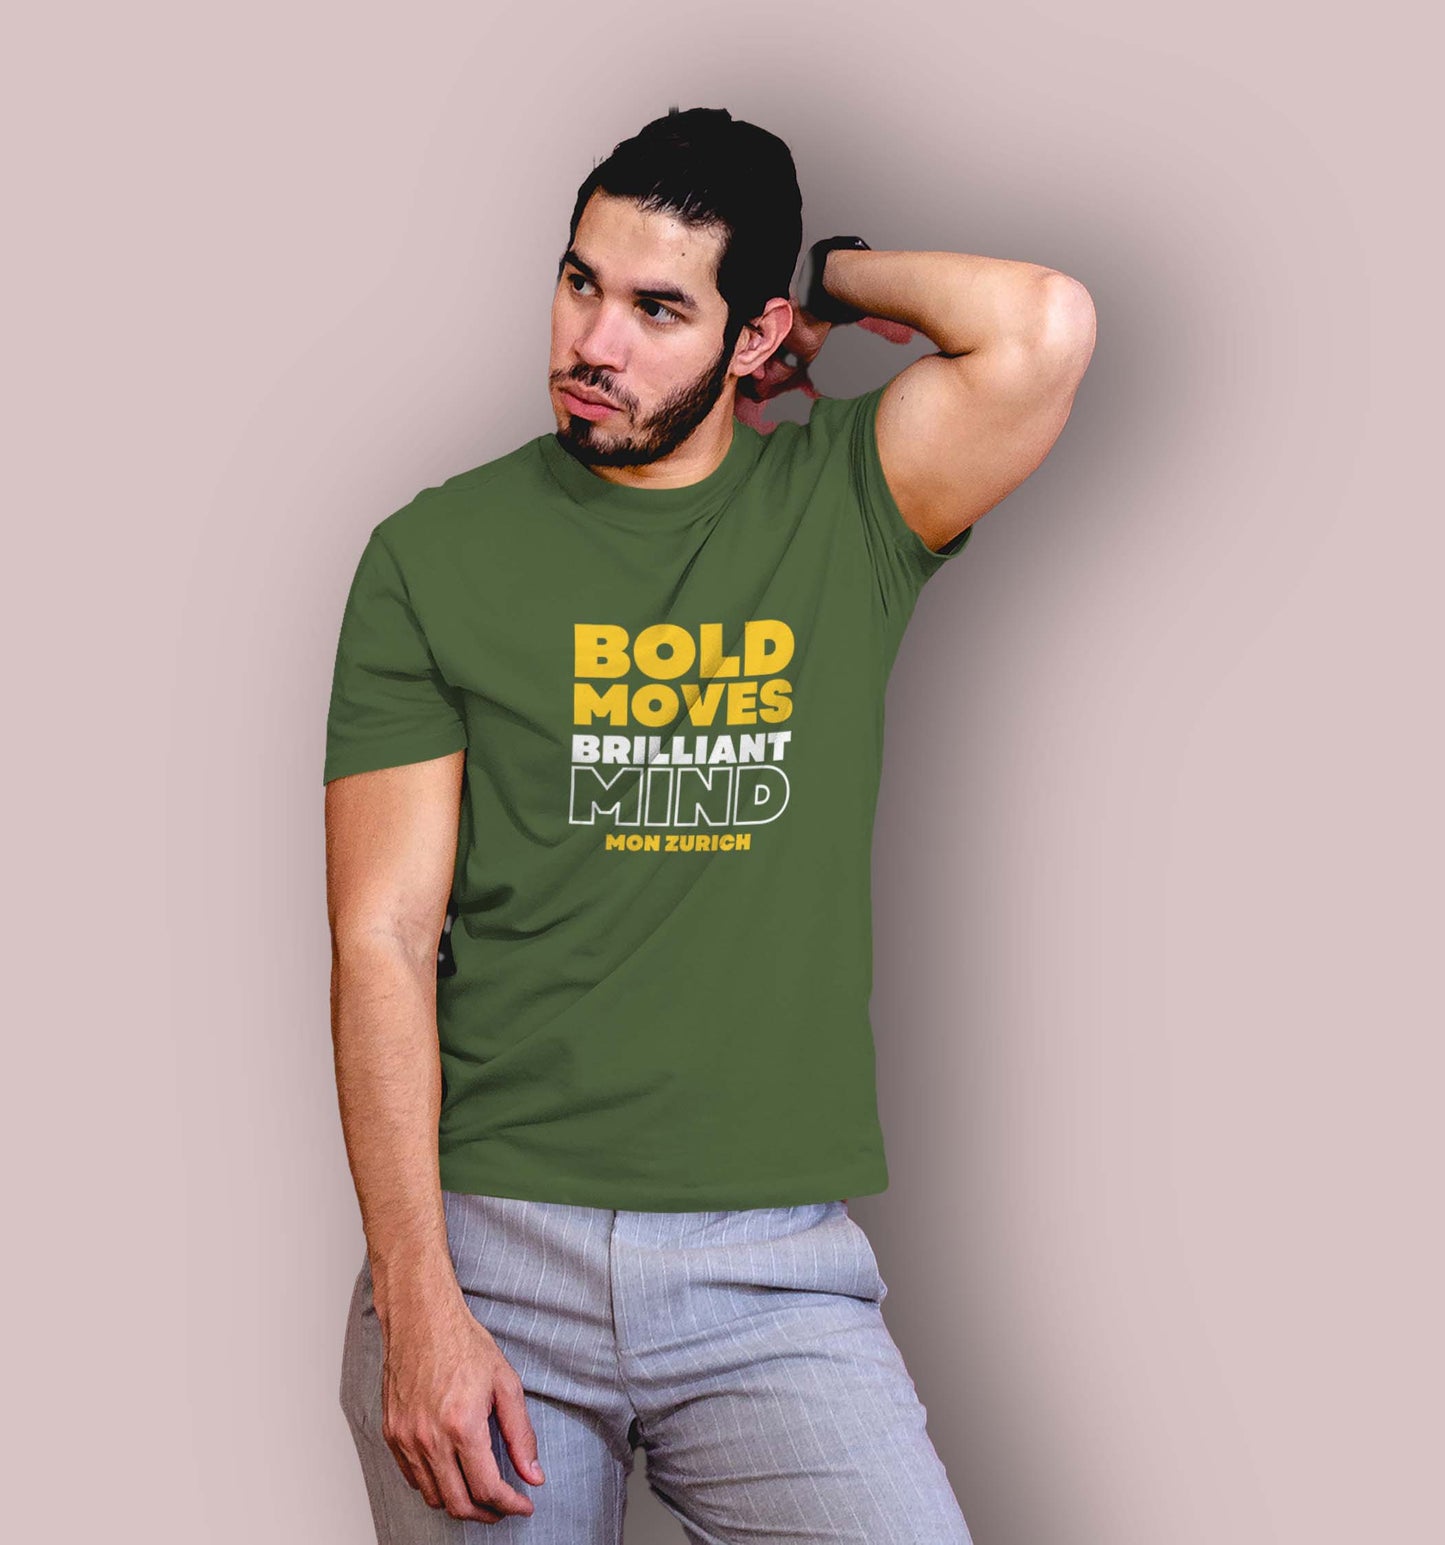 Bold Moves, Brilliant Mind T-Shirt In Dark - Mon Zurich Originals